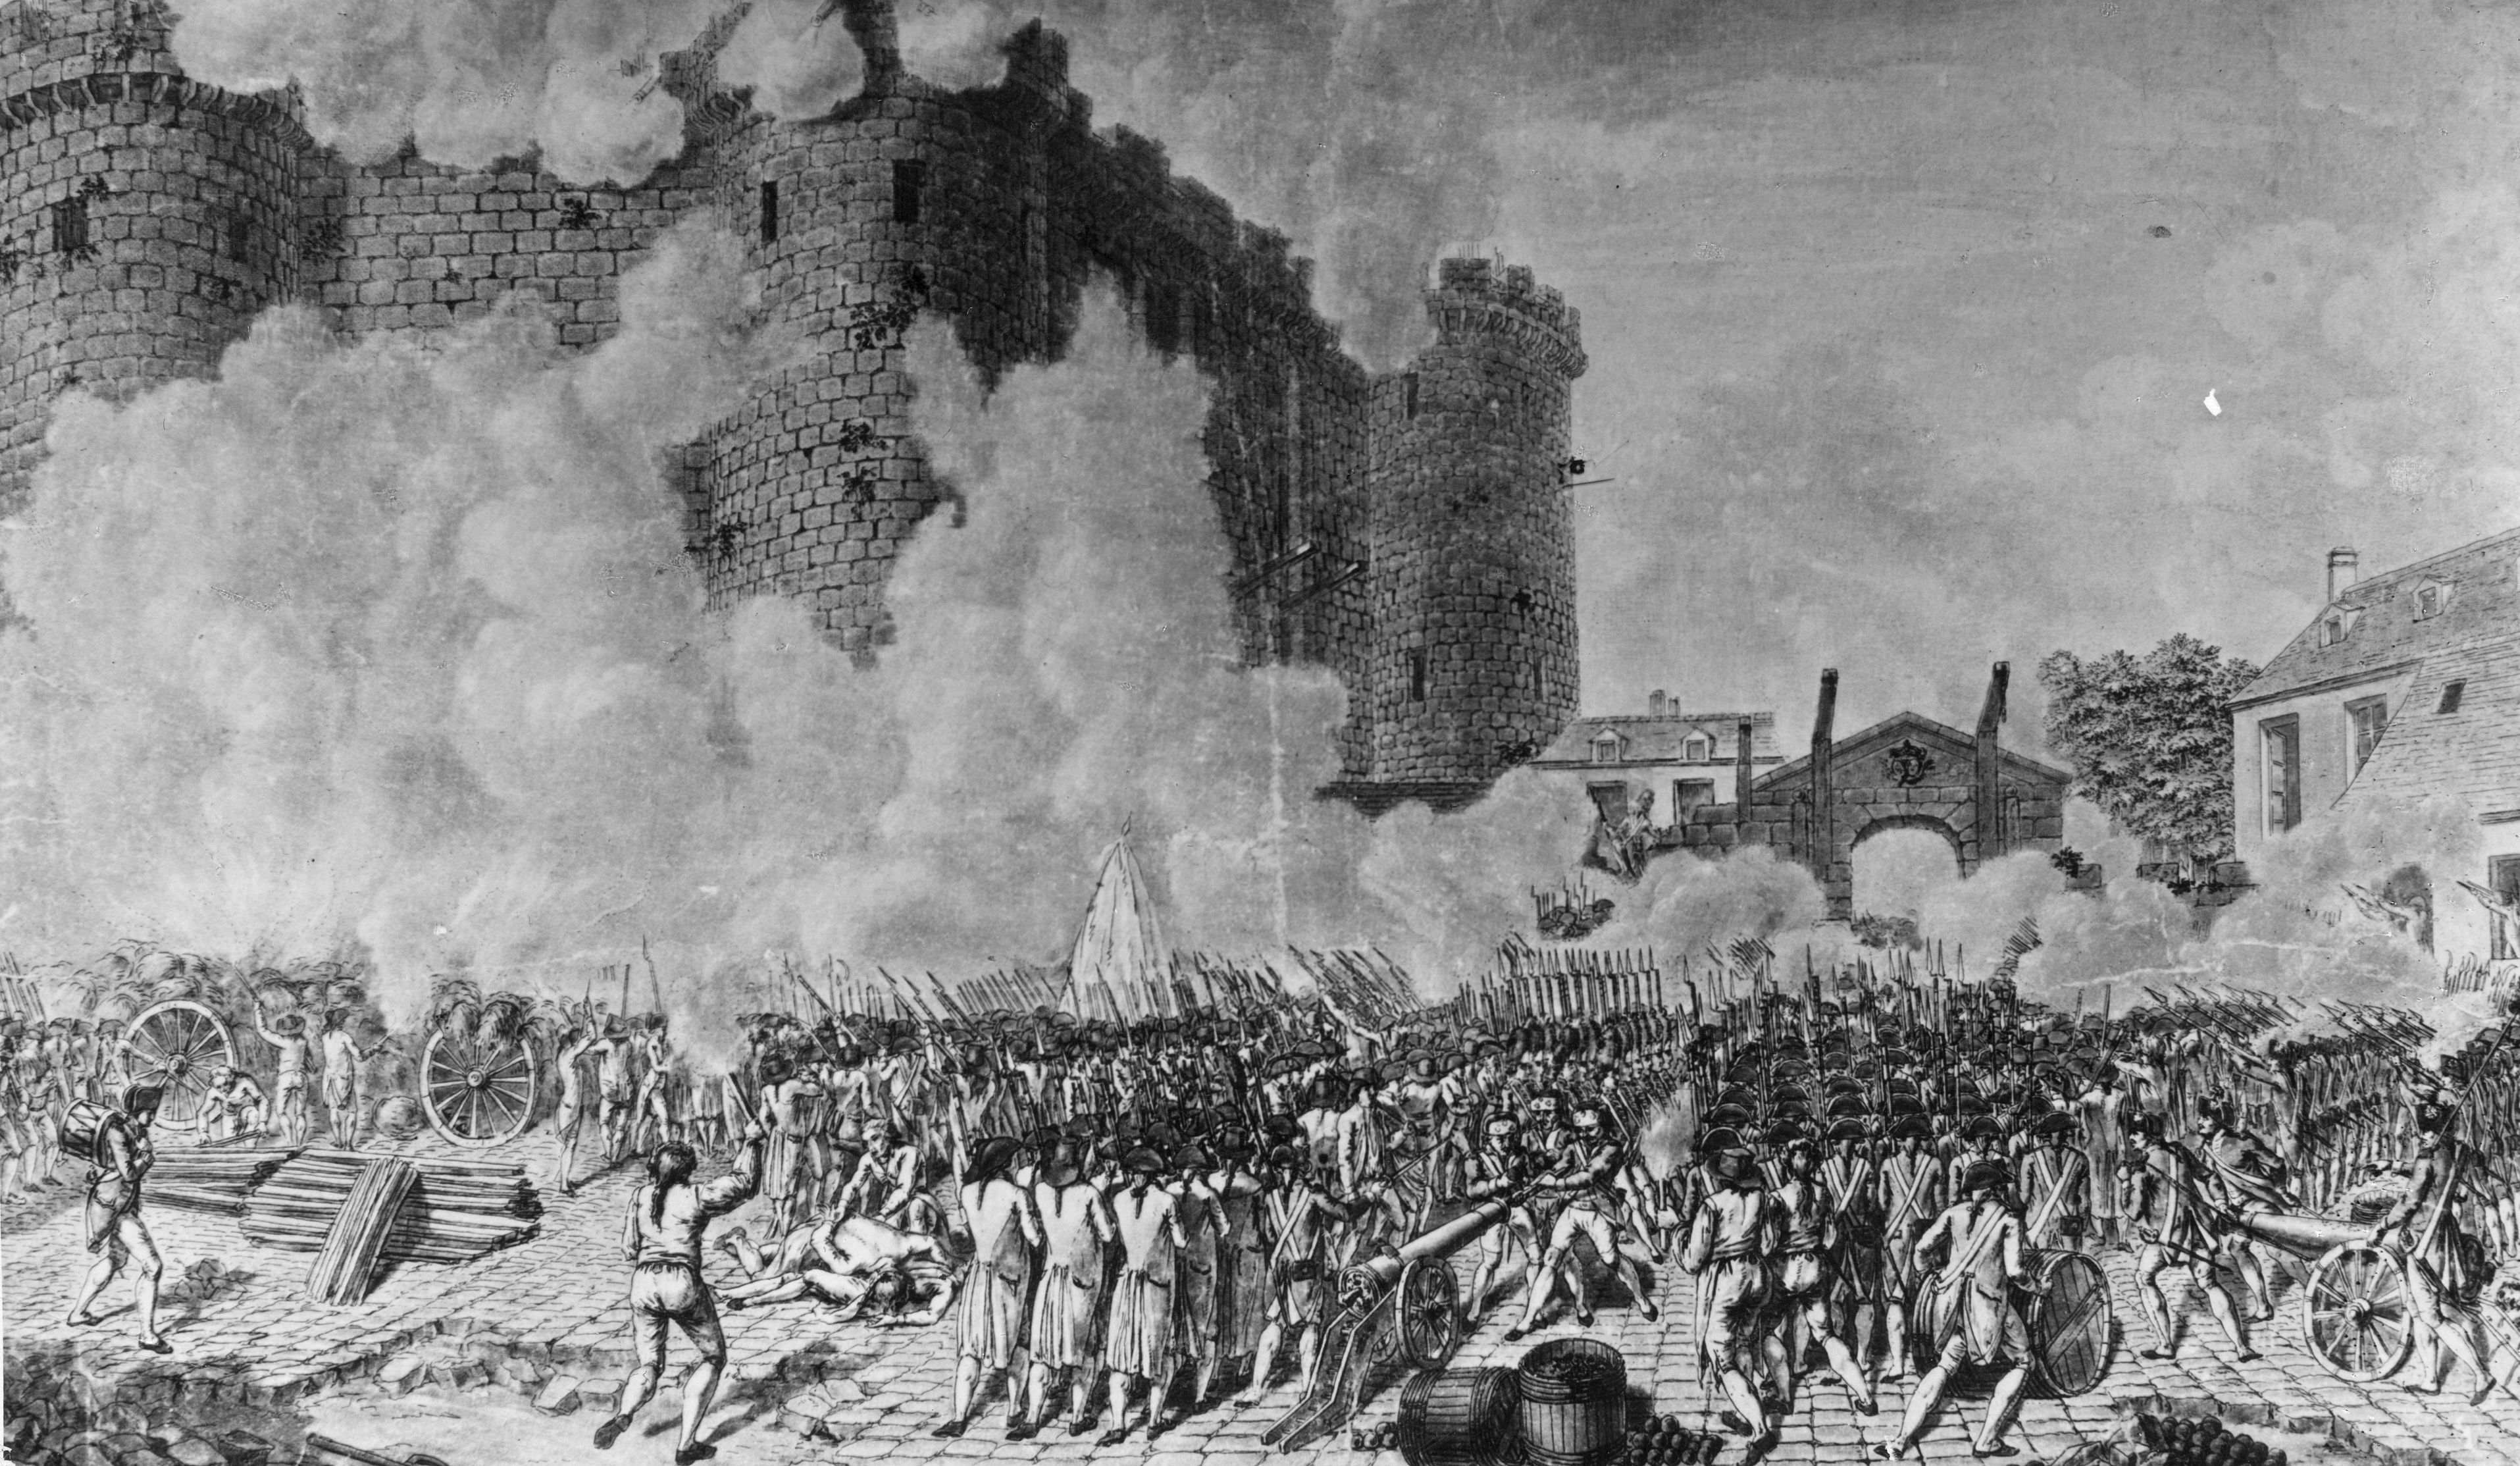 14 luglio 1789, il popolo insorge assaltando e conquistando la Bastiglia, tetro carcere simbolo dell’Ancien Regime, dando vita alla prima scintilla della Rivoluzione in Francia